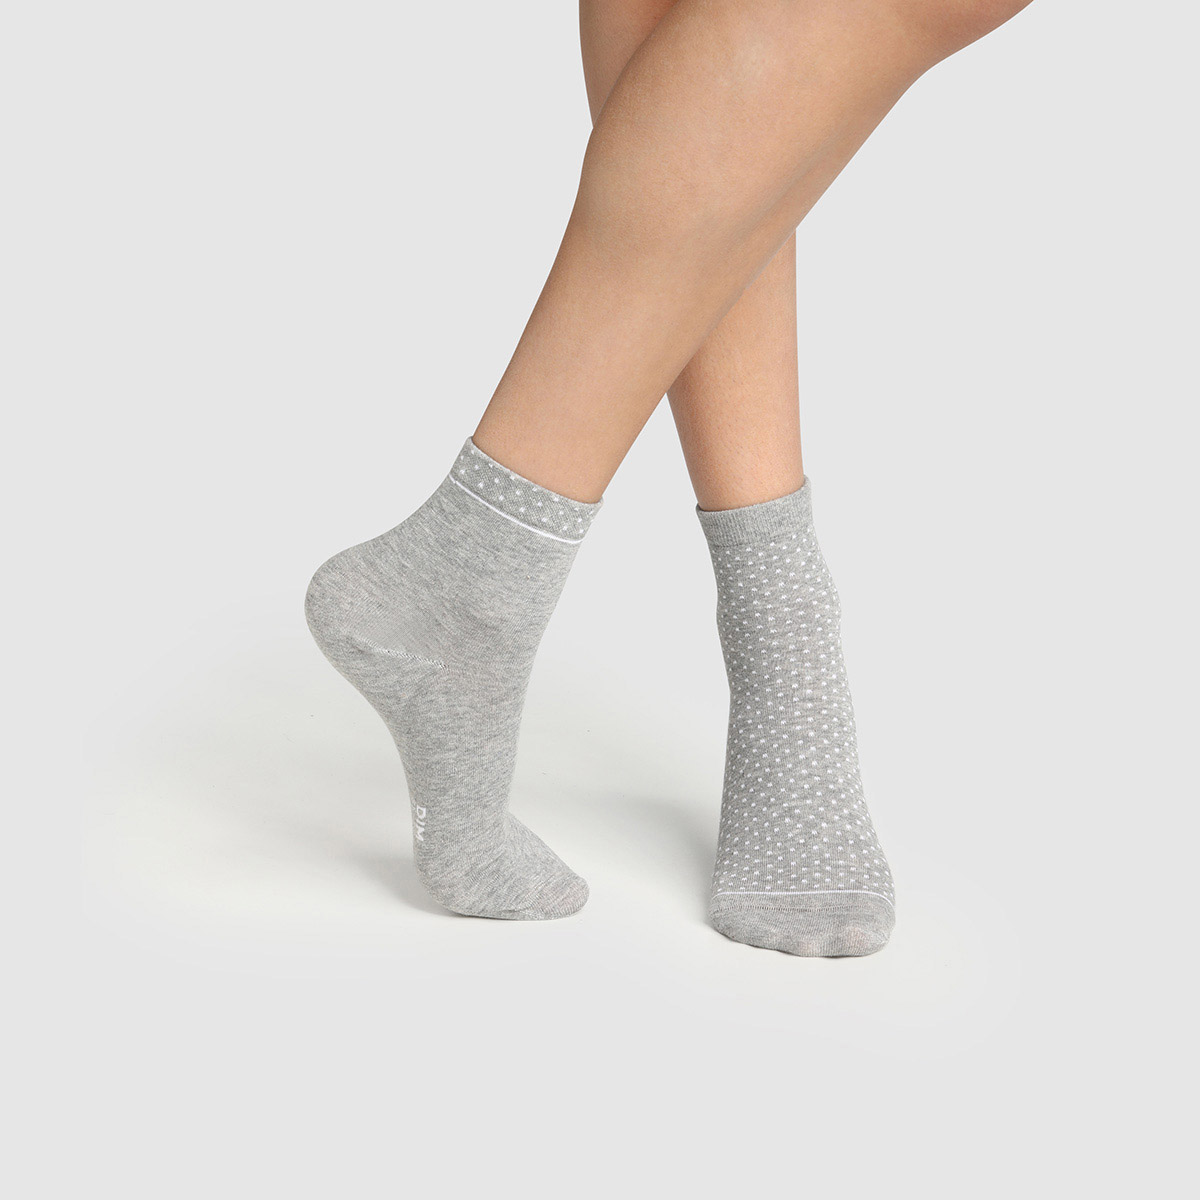 Visiter la boutique DimDim Socquettes Coton Confort & Respirabilité Femme x4 